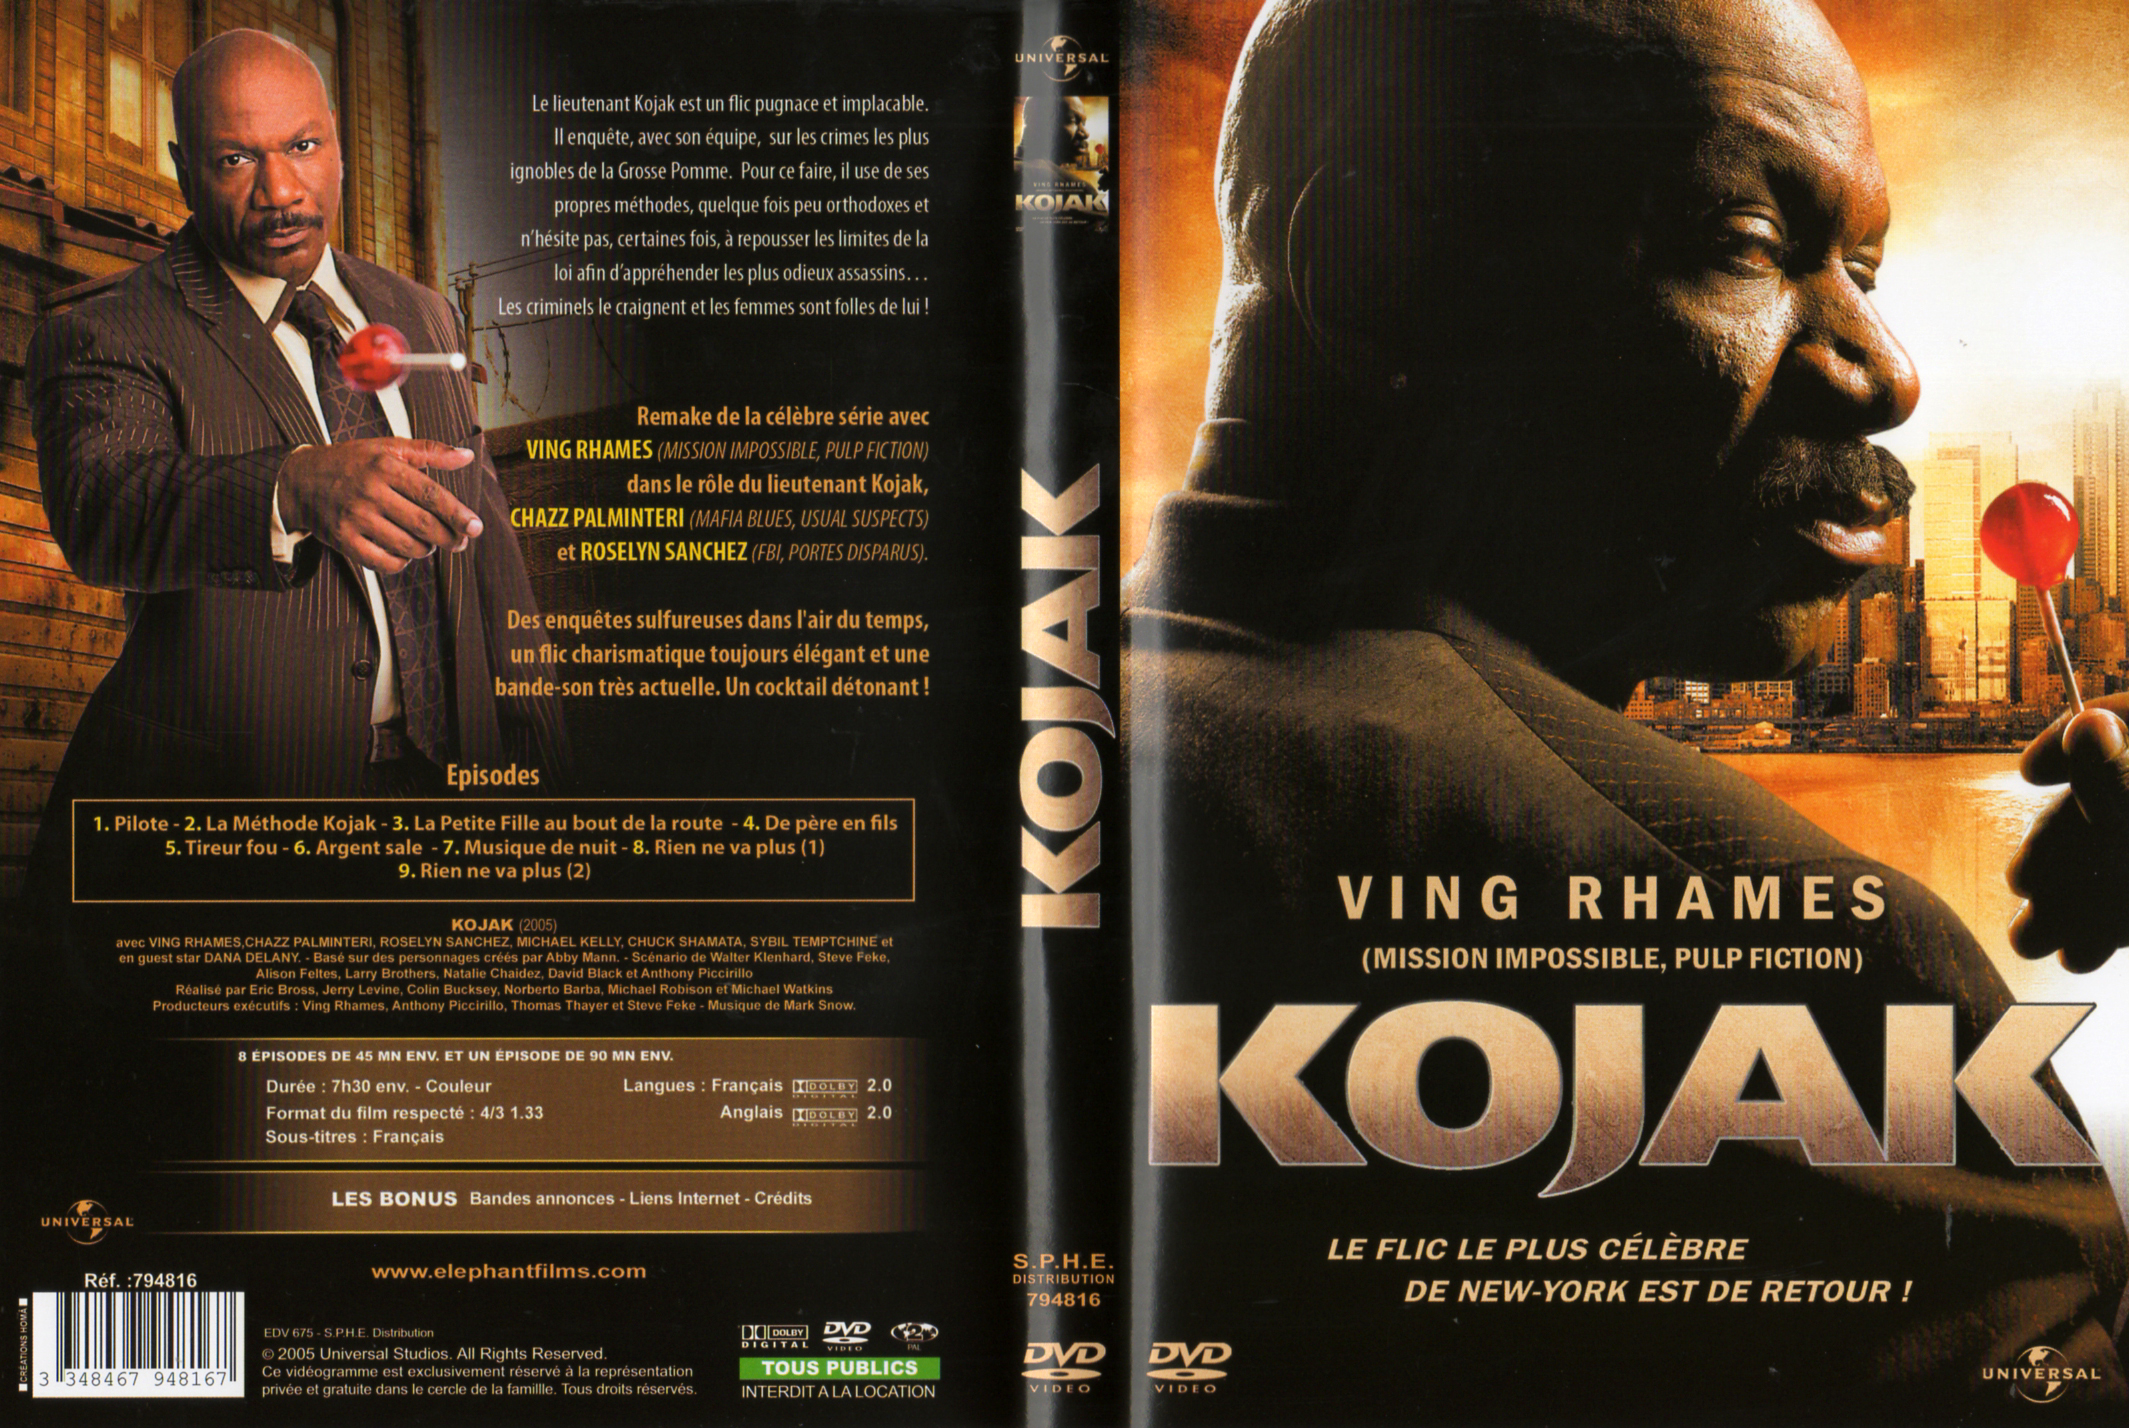 Jaquette DVD Kojak (2005)